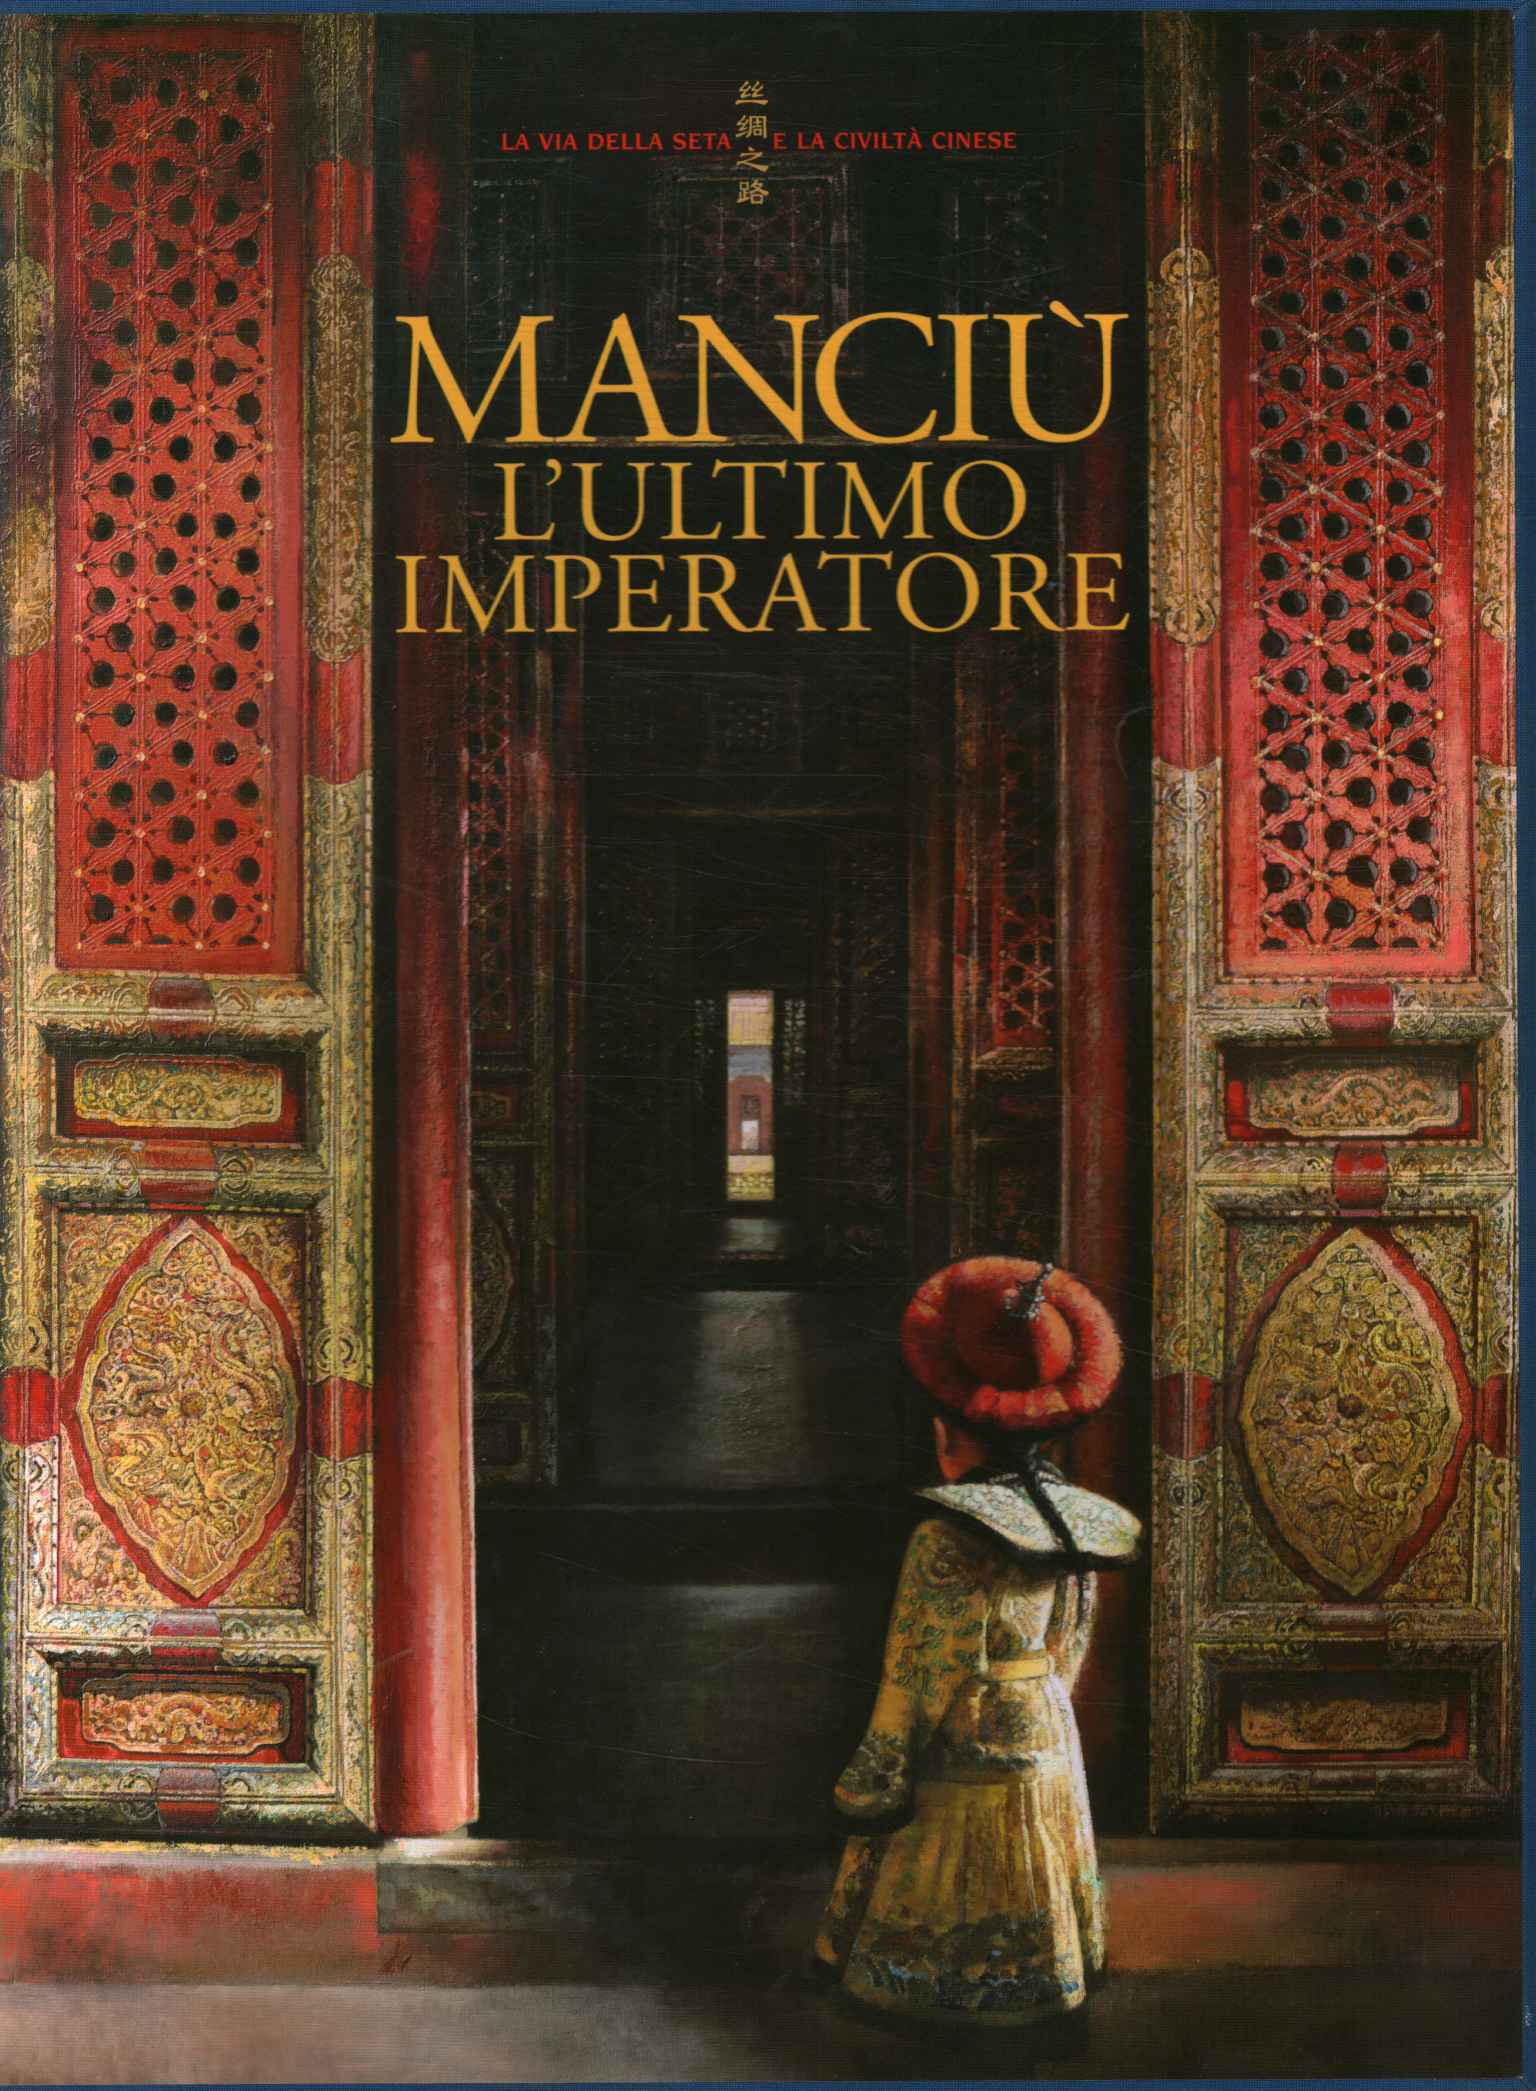 Manchu the last emperor